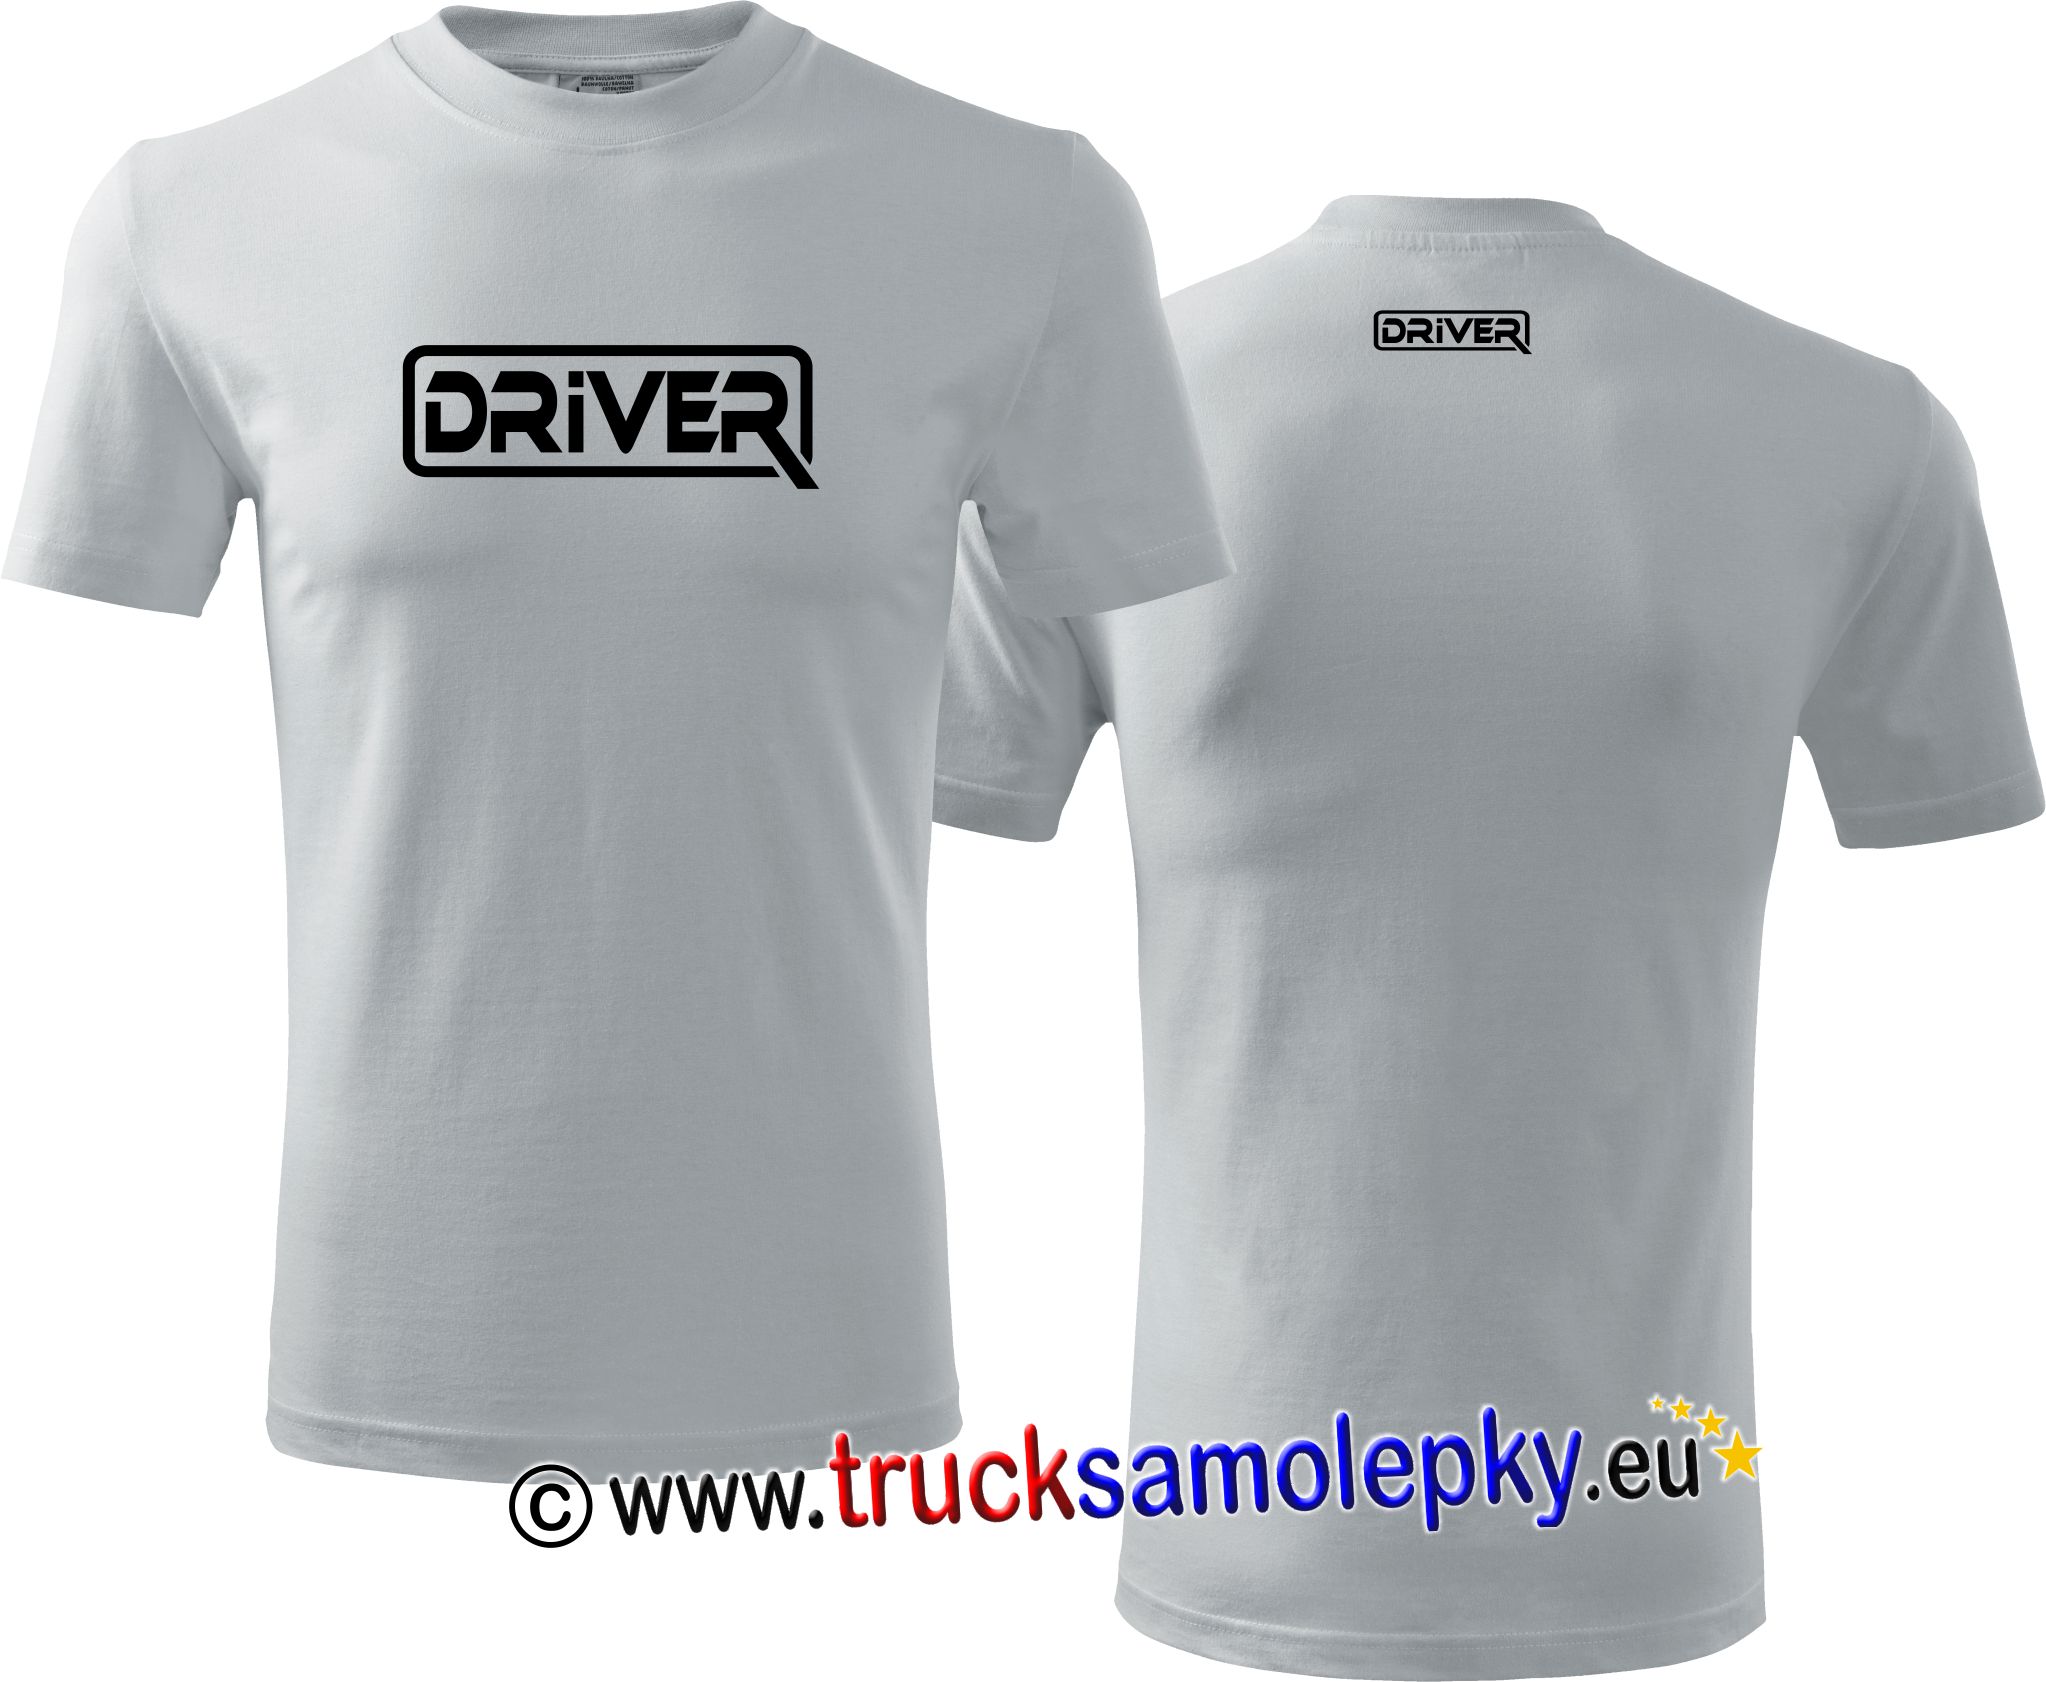 Truck tričko DRIVER v barvě bílé